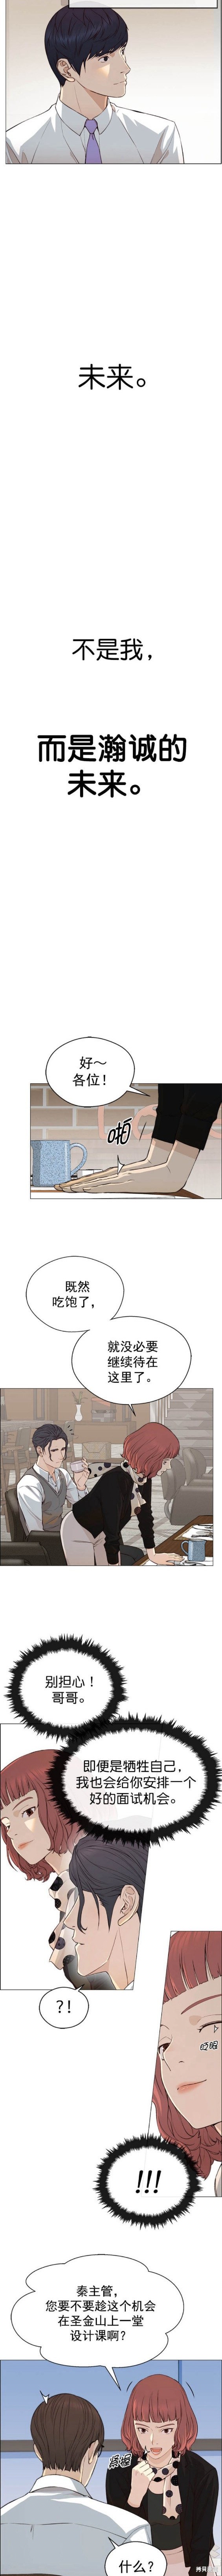 男子汉漫画,第136话4图